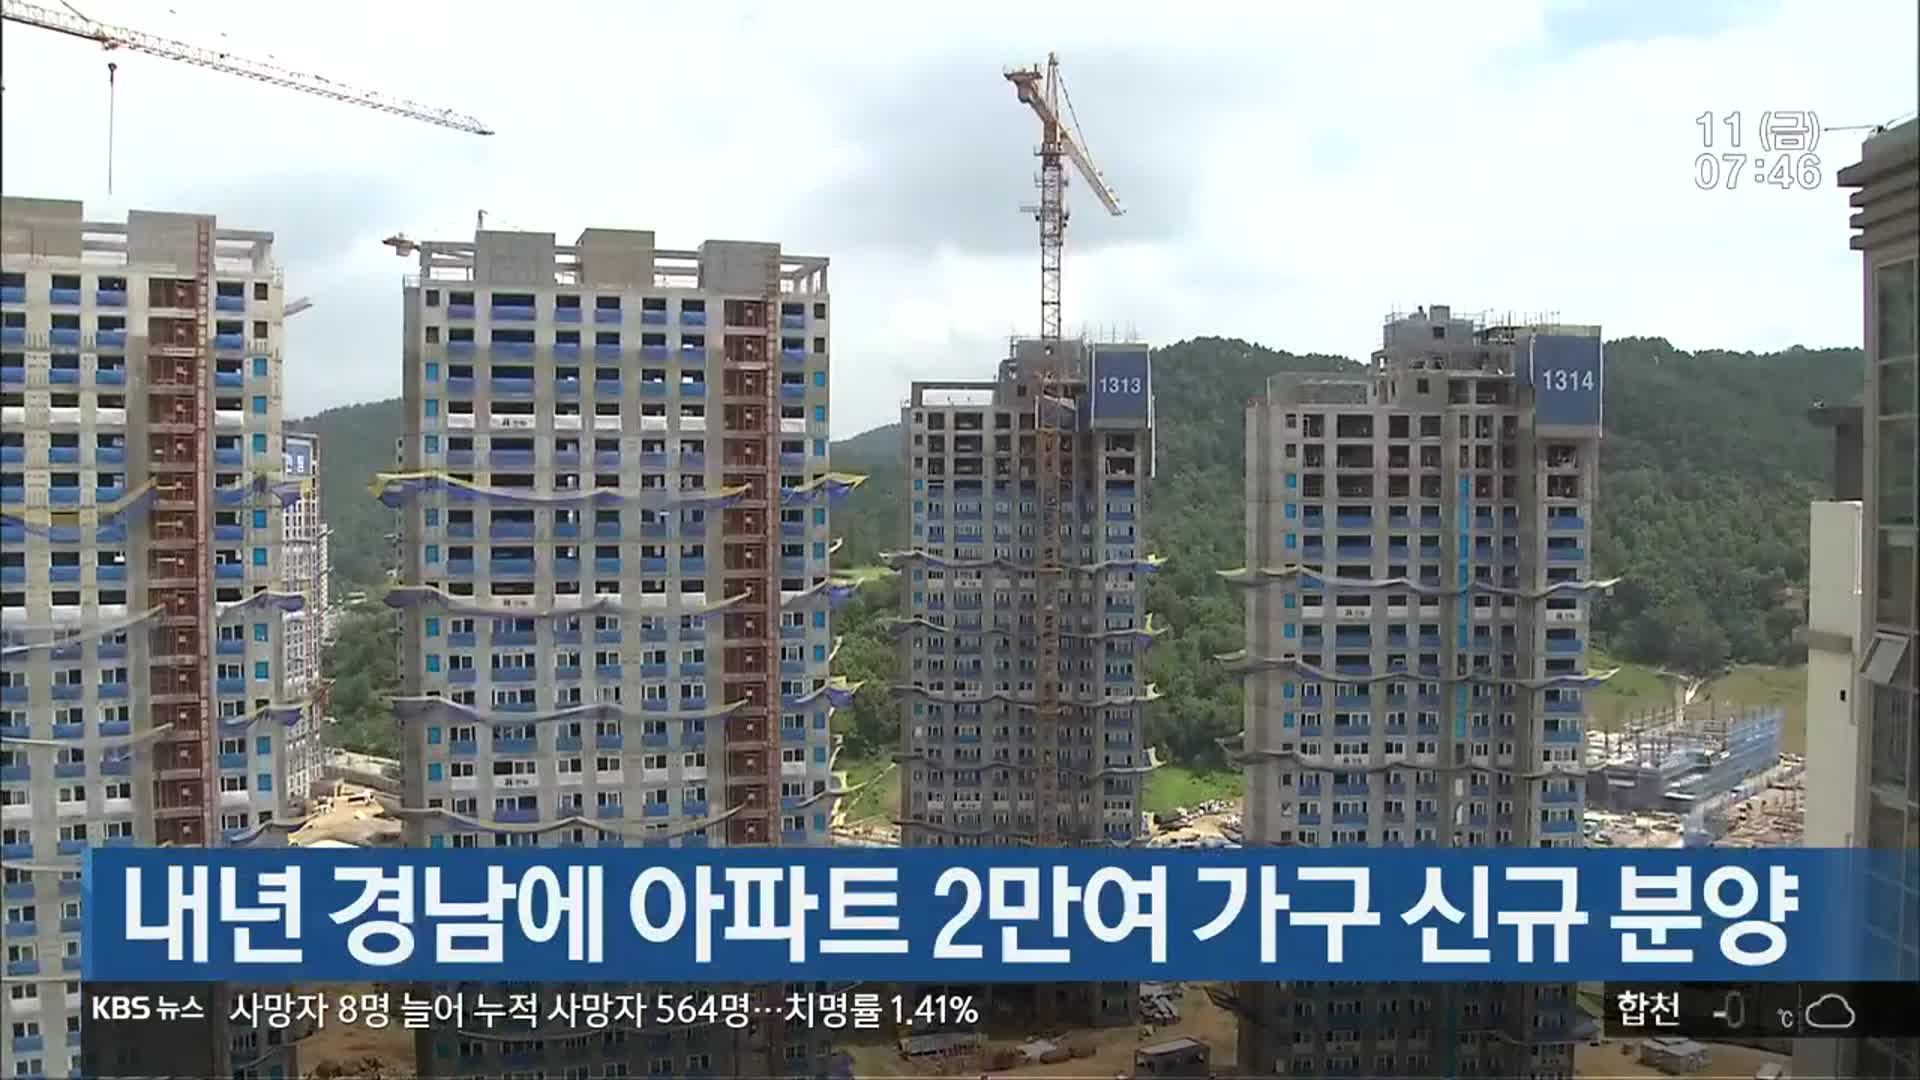 내년 경남에 아파트 2만여 가구 신규 분양